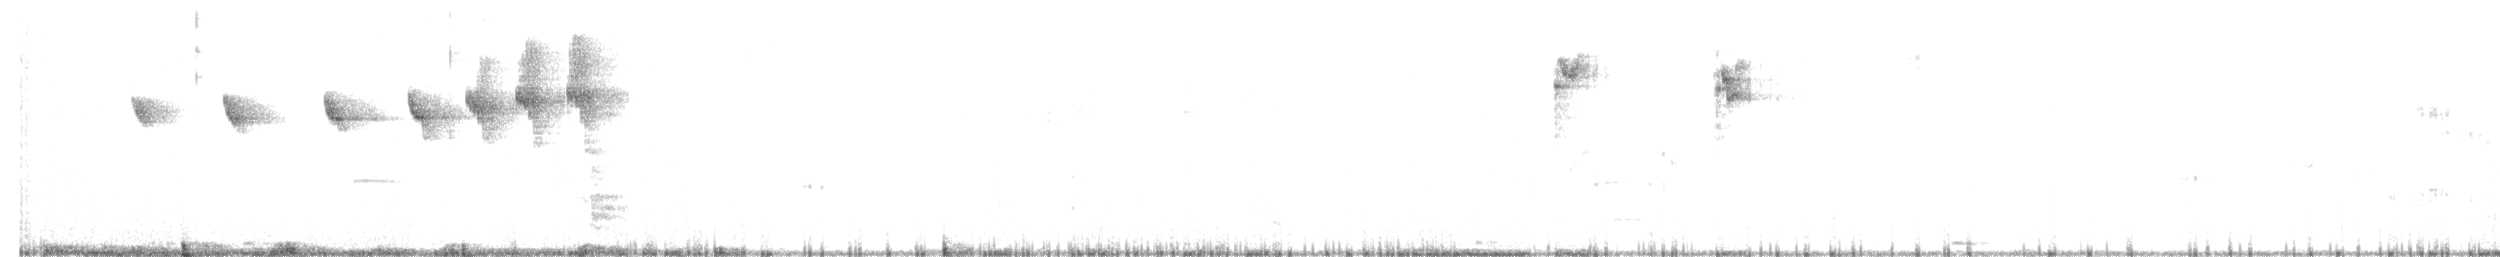 Ak Karınlı Kolibri - ML454905611